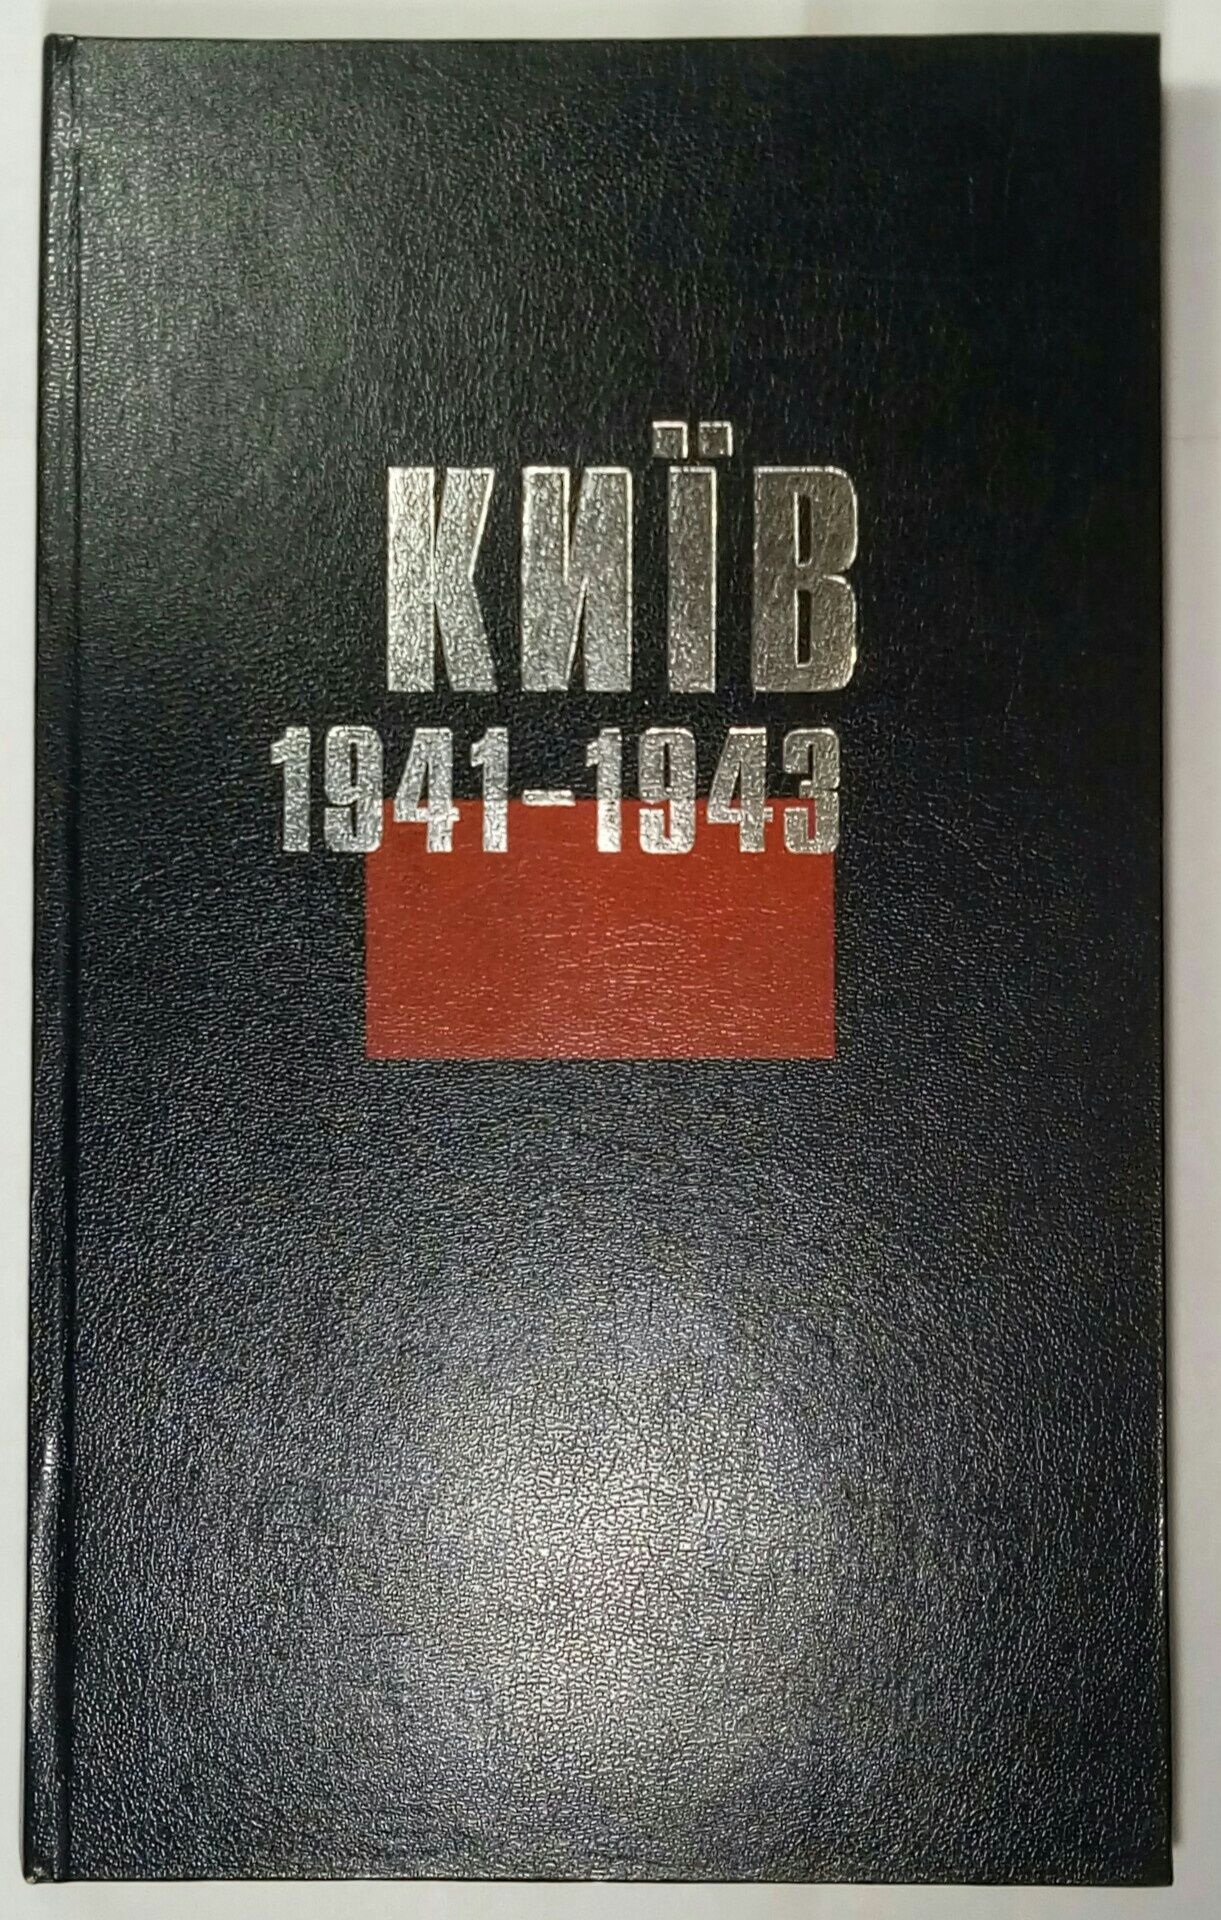 Київ 1941-1943 Д В Малаков Книга подарунок Ексклюзивне видання тр 5000